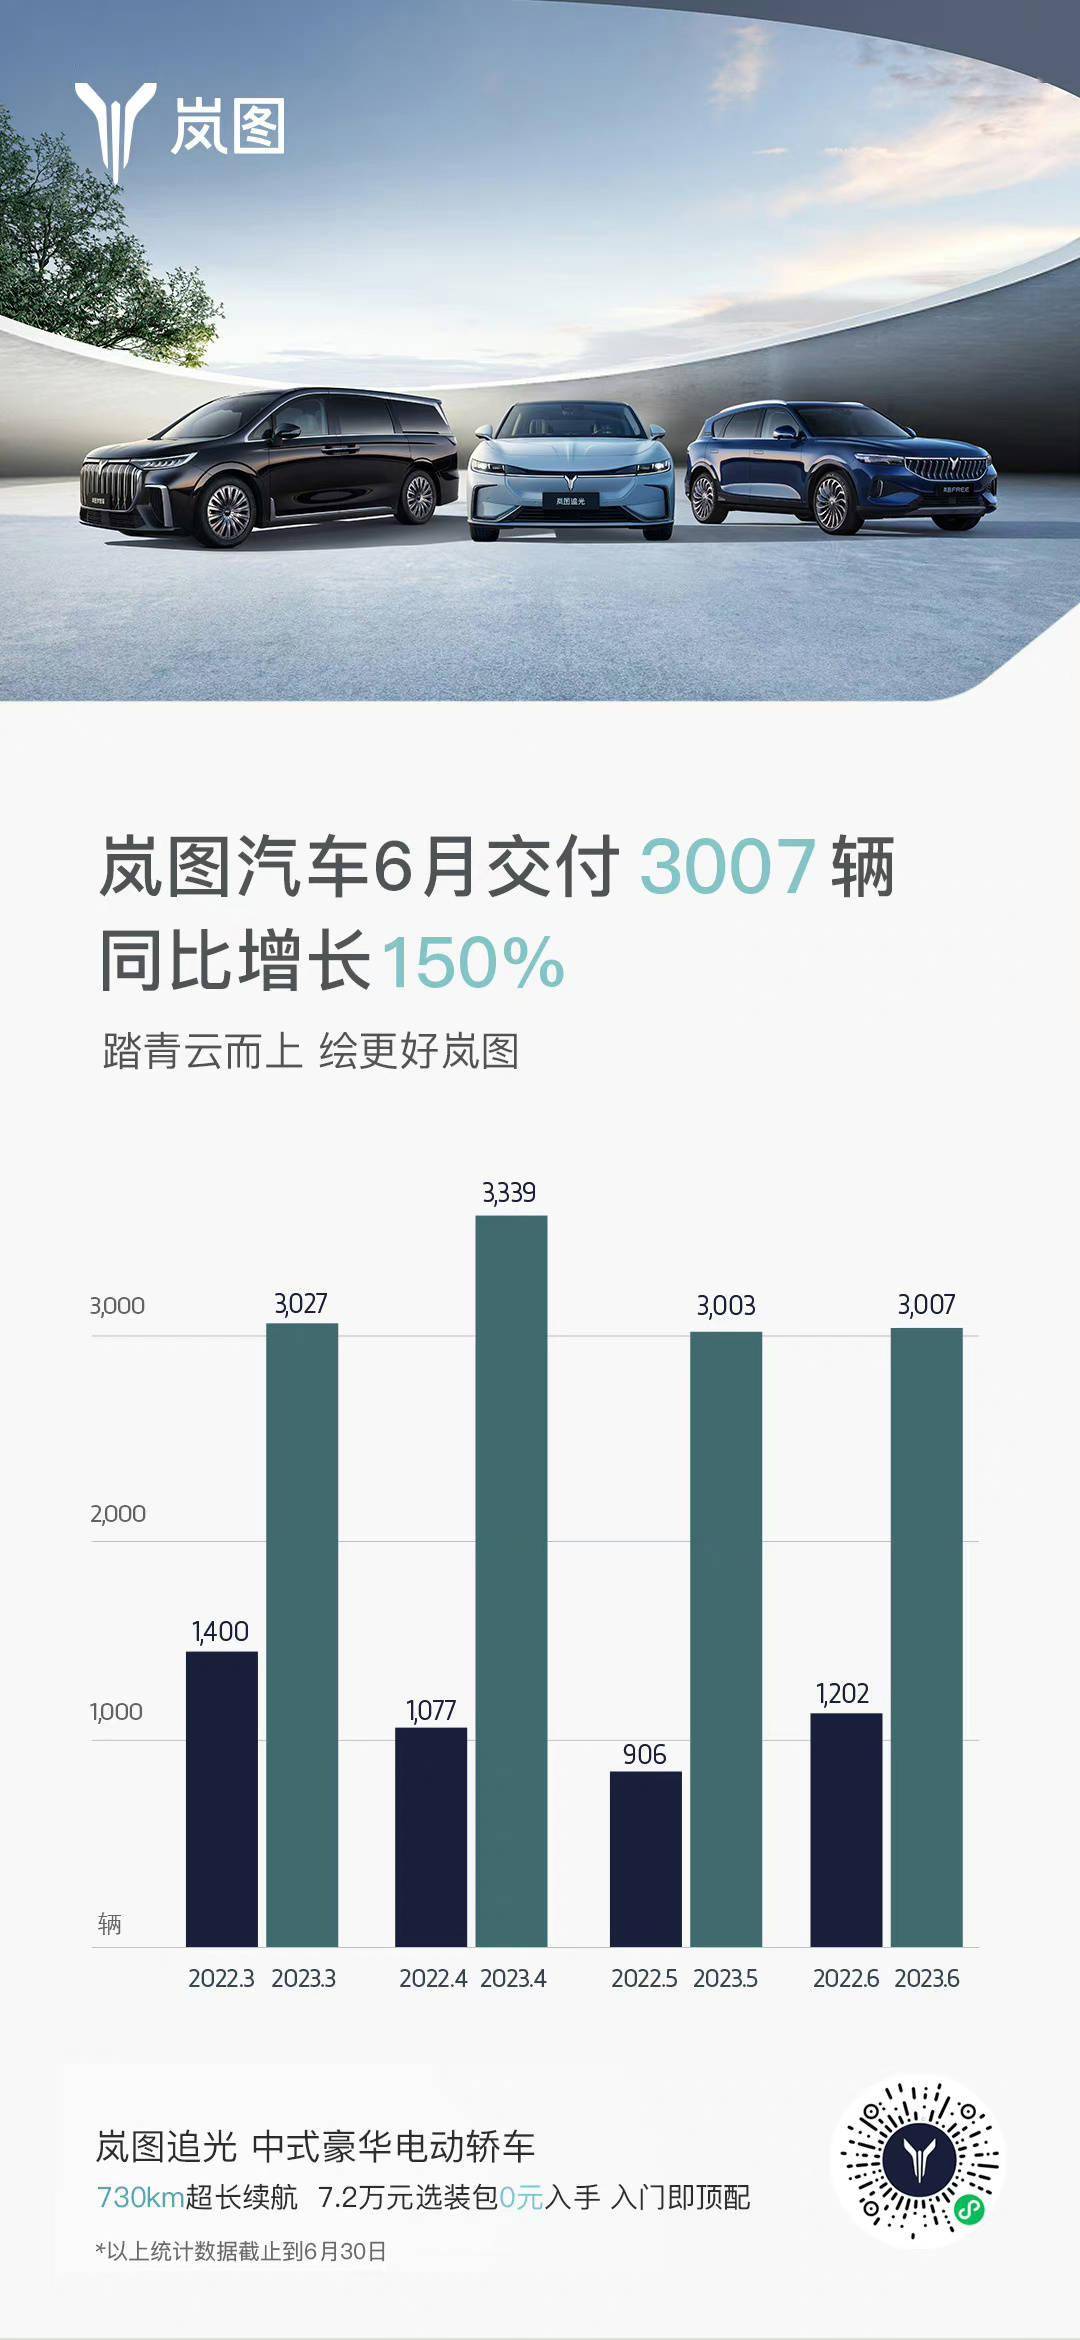 岚图汽车今天公布了6月交付3007辆汽车 连续4个月保持佳绩